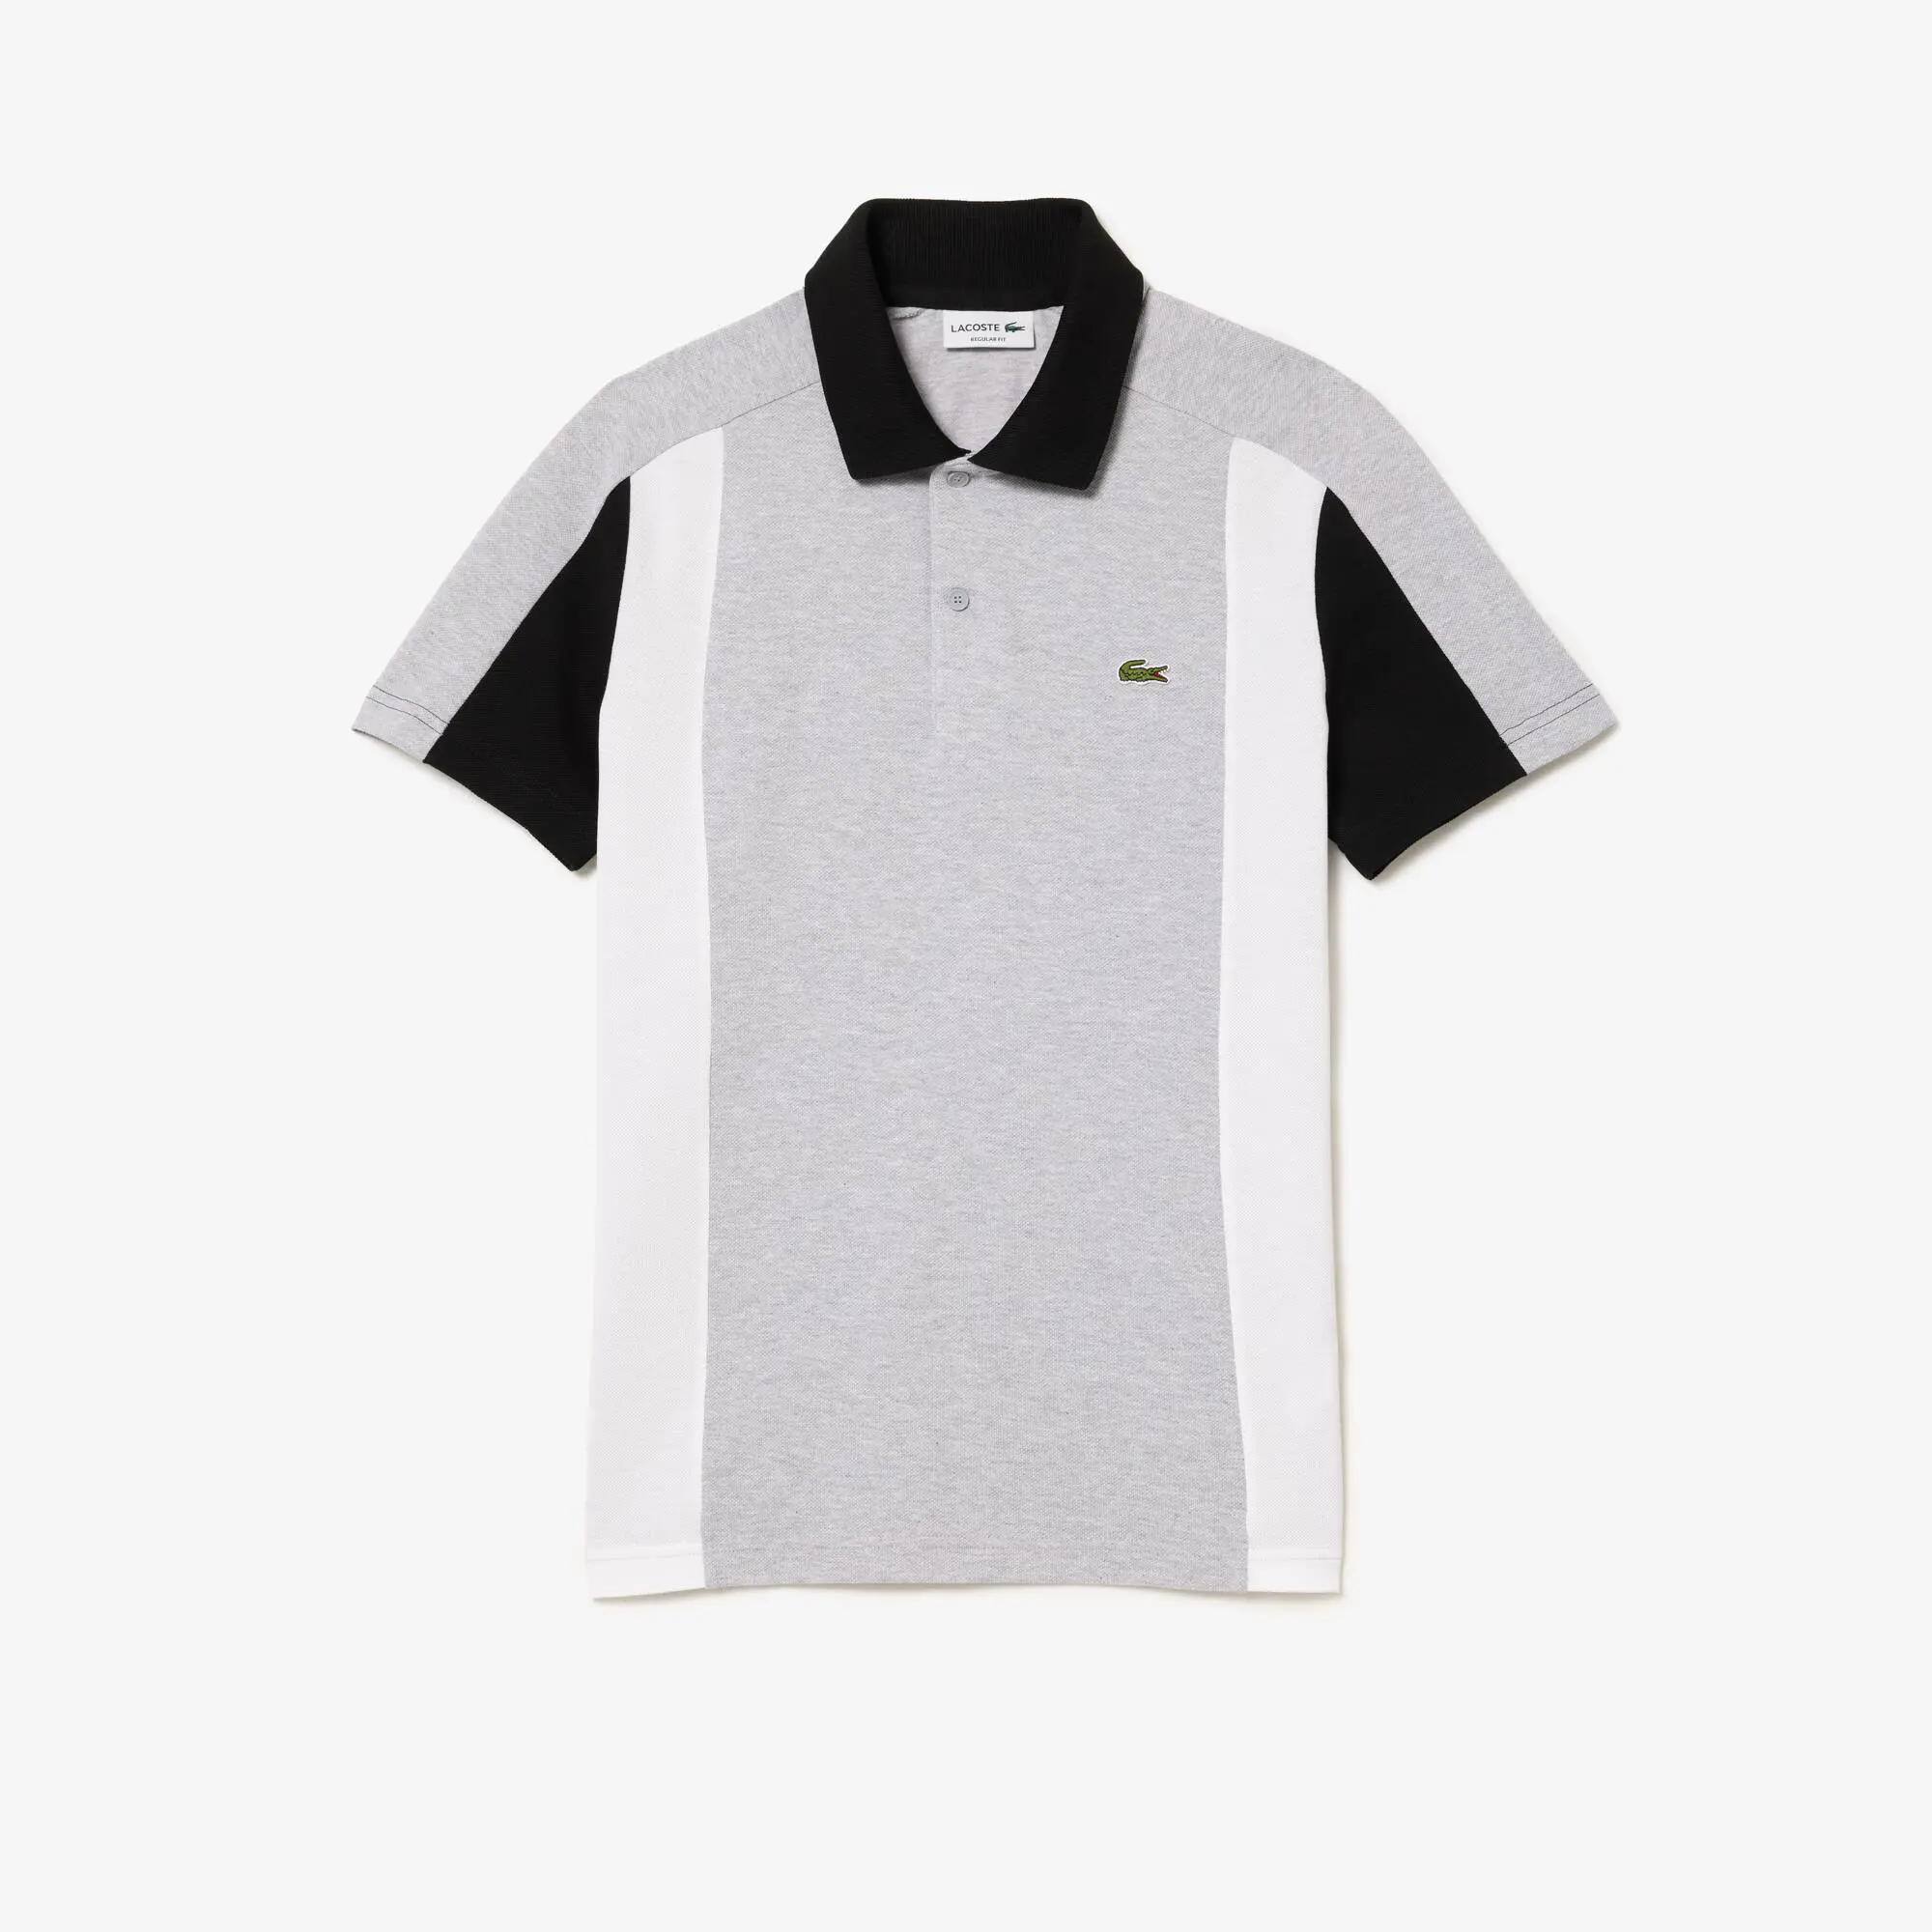 Lacoste Cotton Piqué Colourblock Polo Shirt. 2